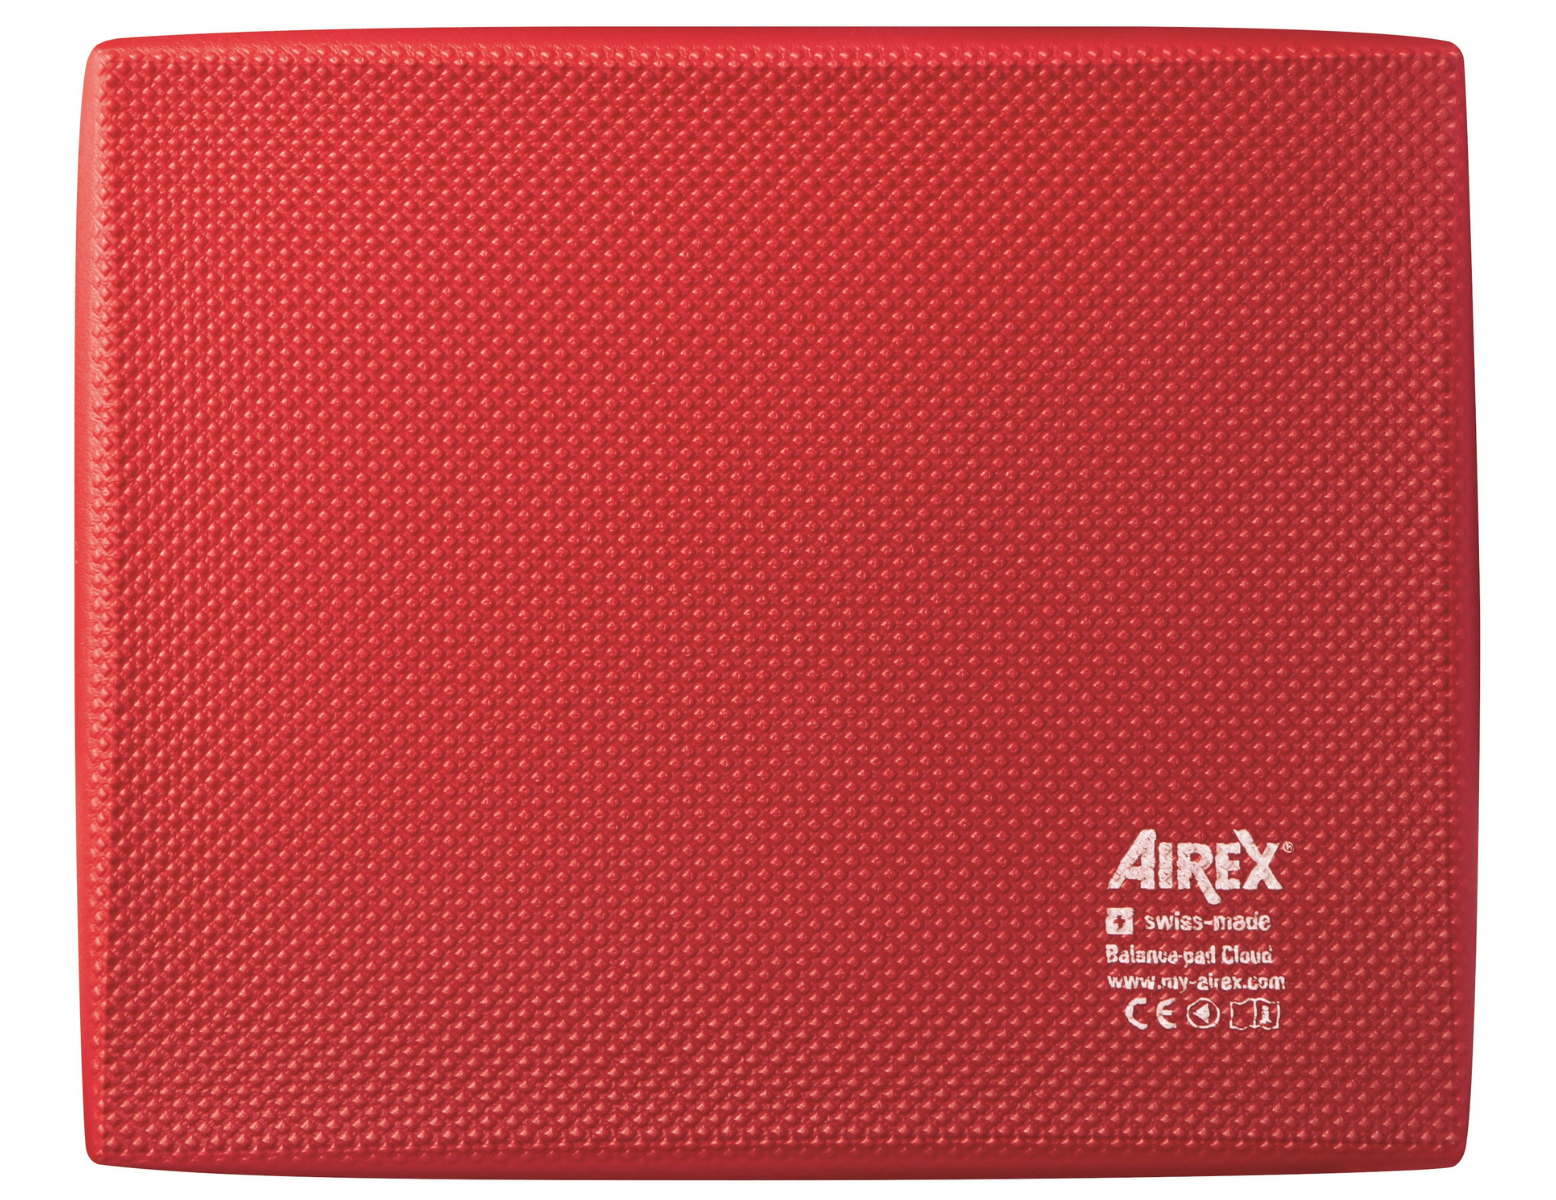 Airex Balance Pad Cloud - 50 x 41 x 6 cm - rouge